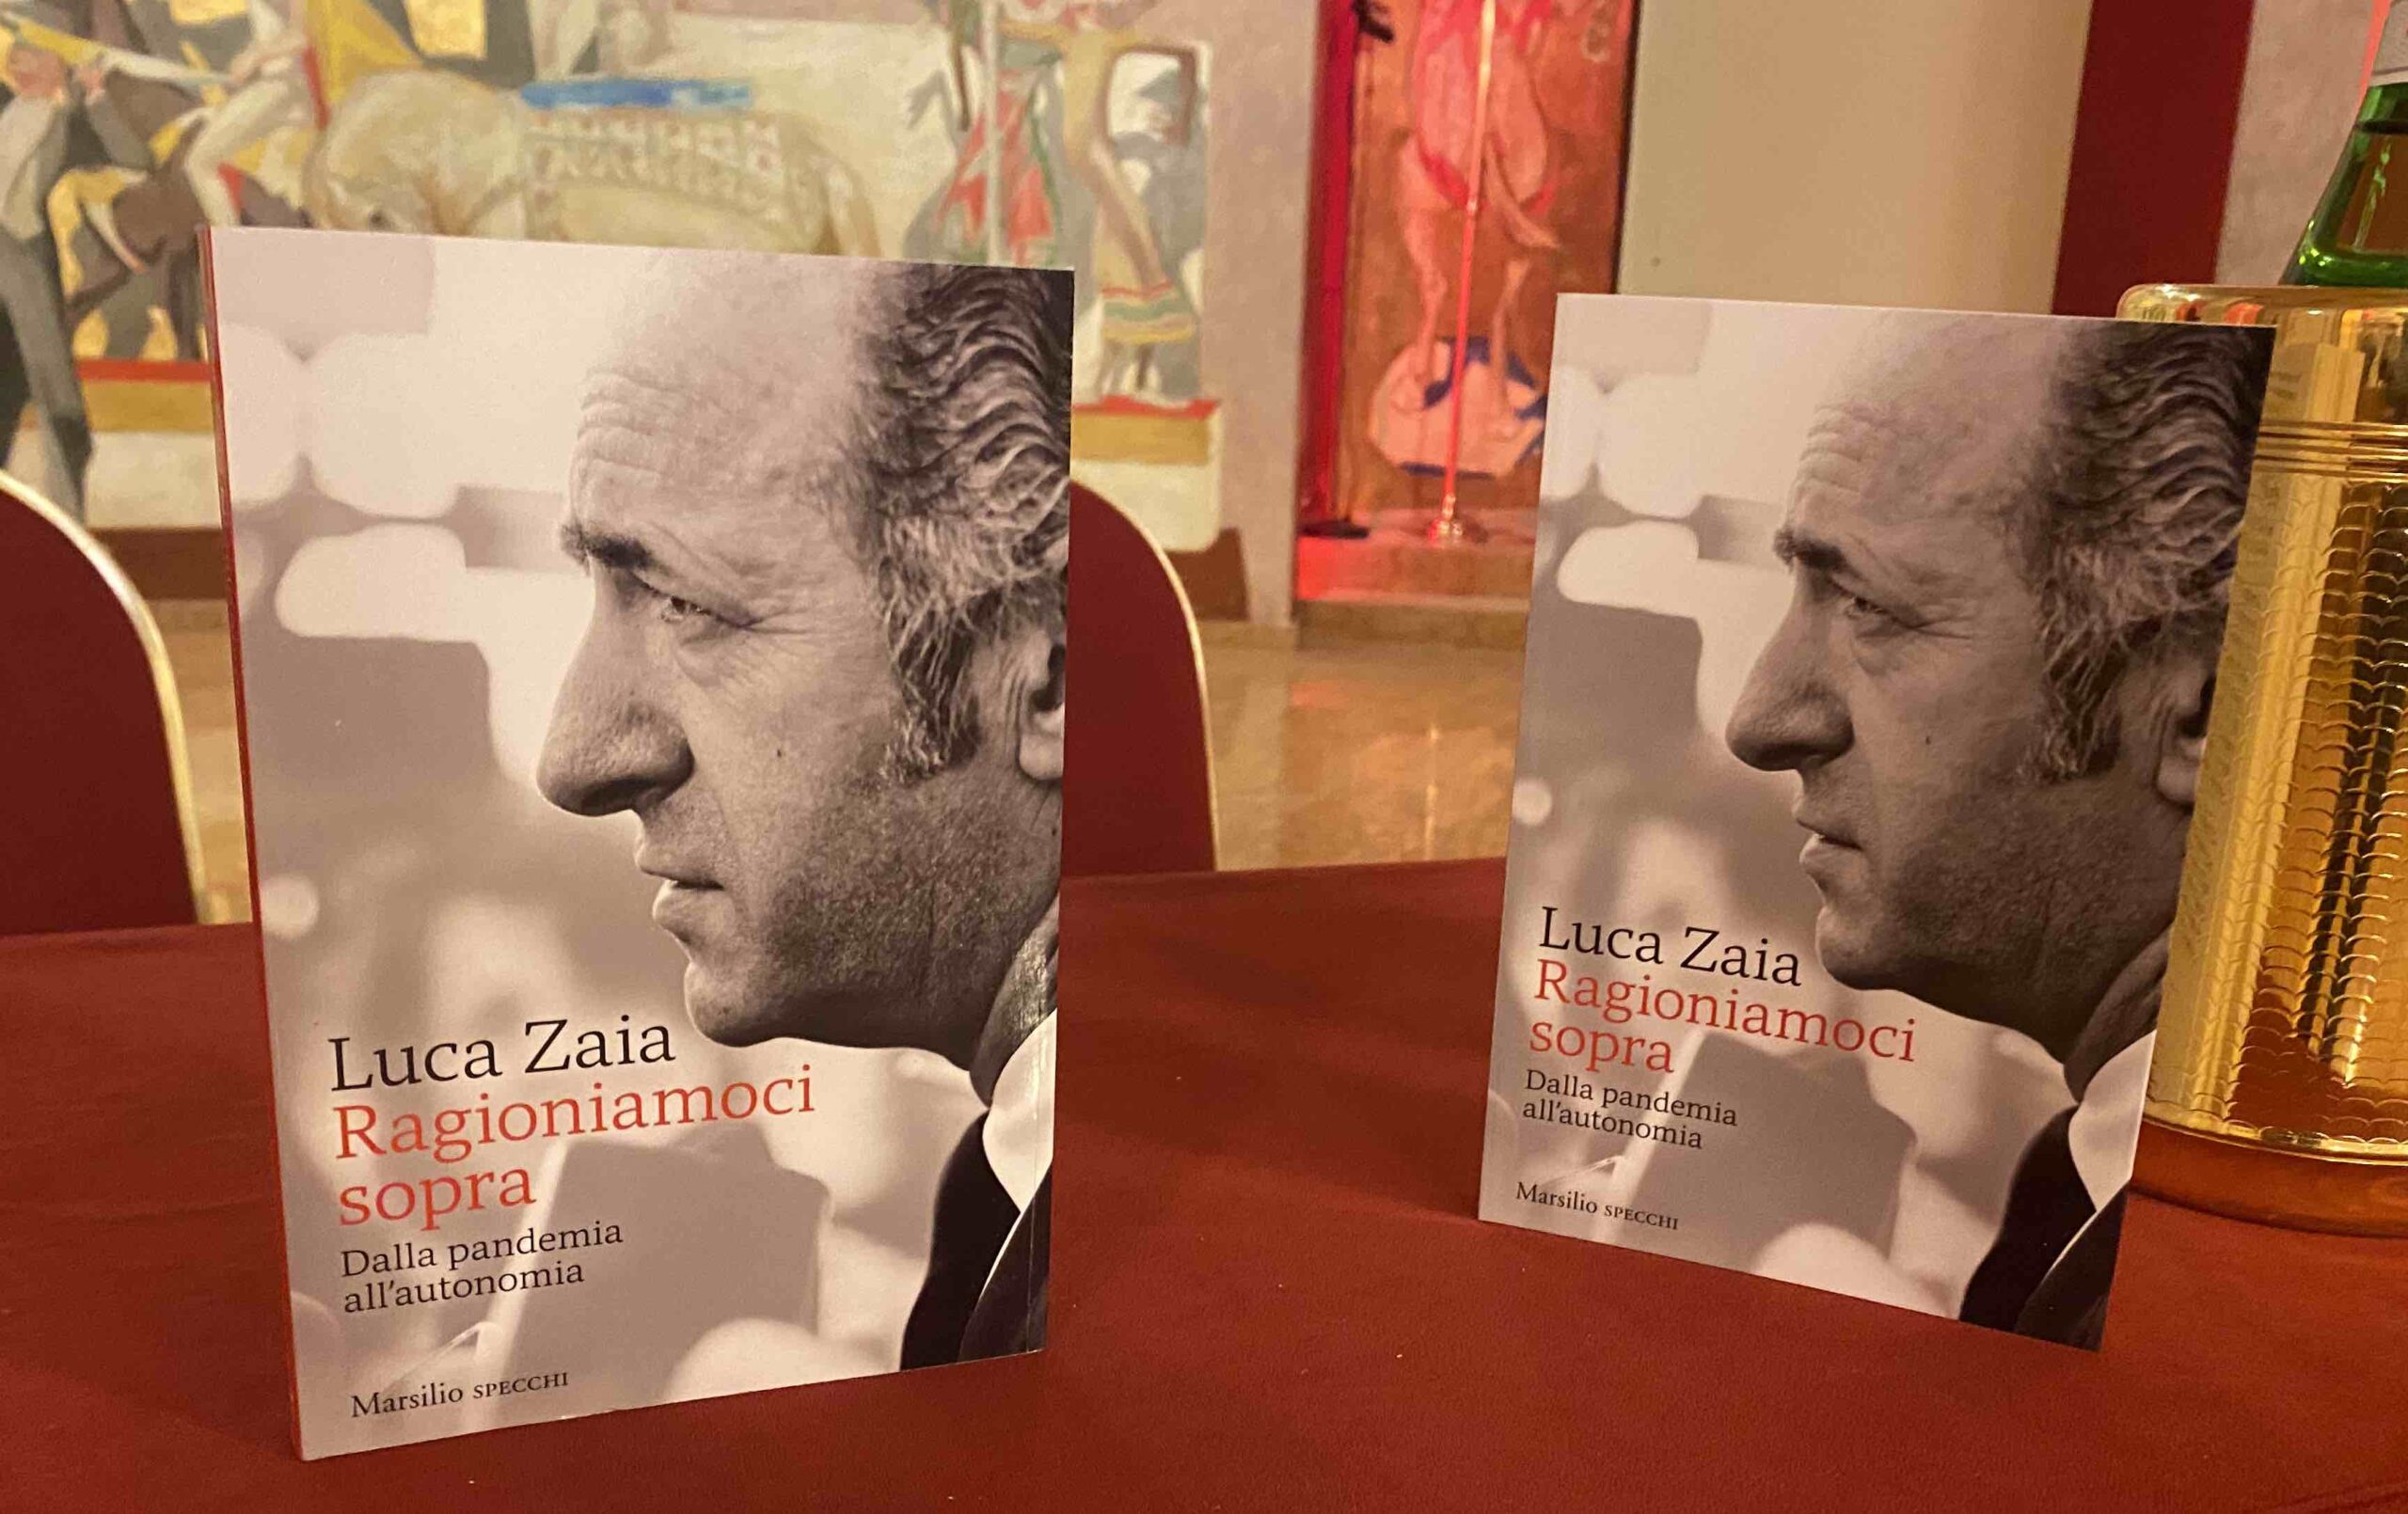 “Ragioniamoci sopra – Dalla pandemia all’autonomia” è il libro scritto da Luca Zaia presentato all’Hotel Due Torri.